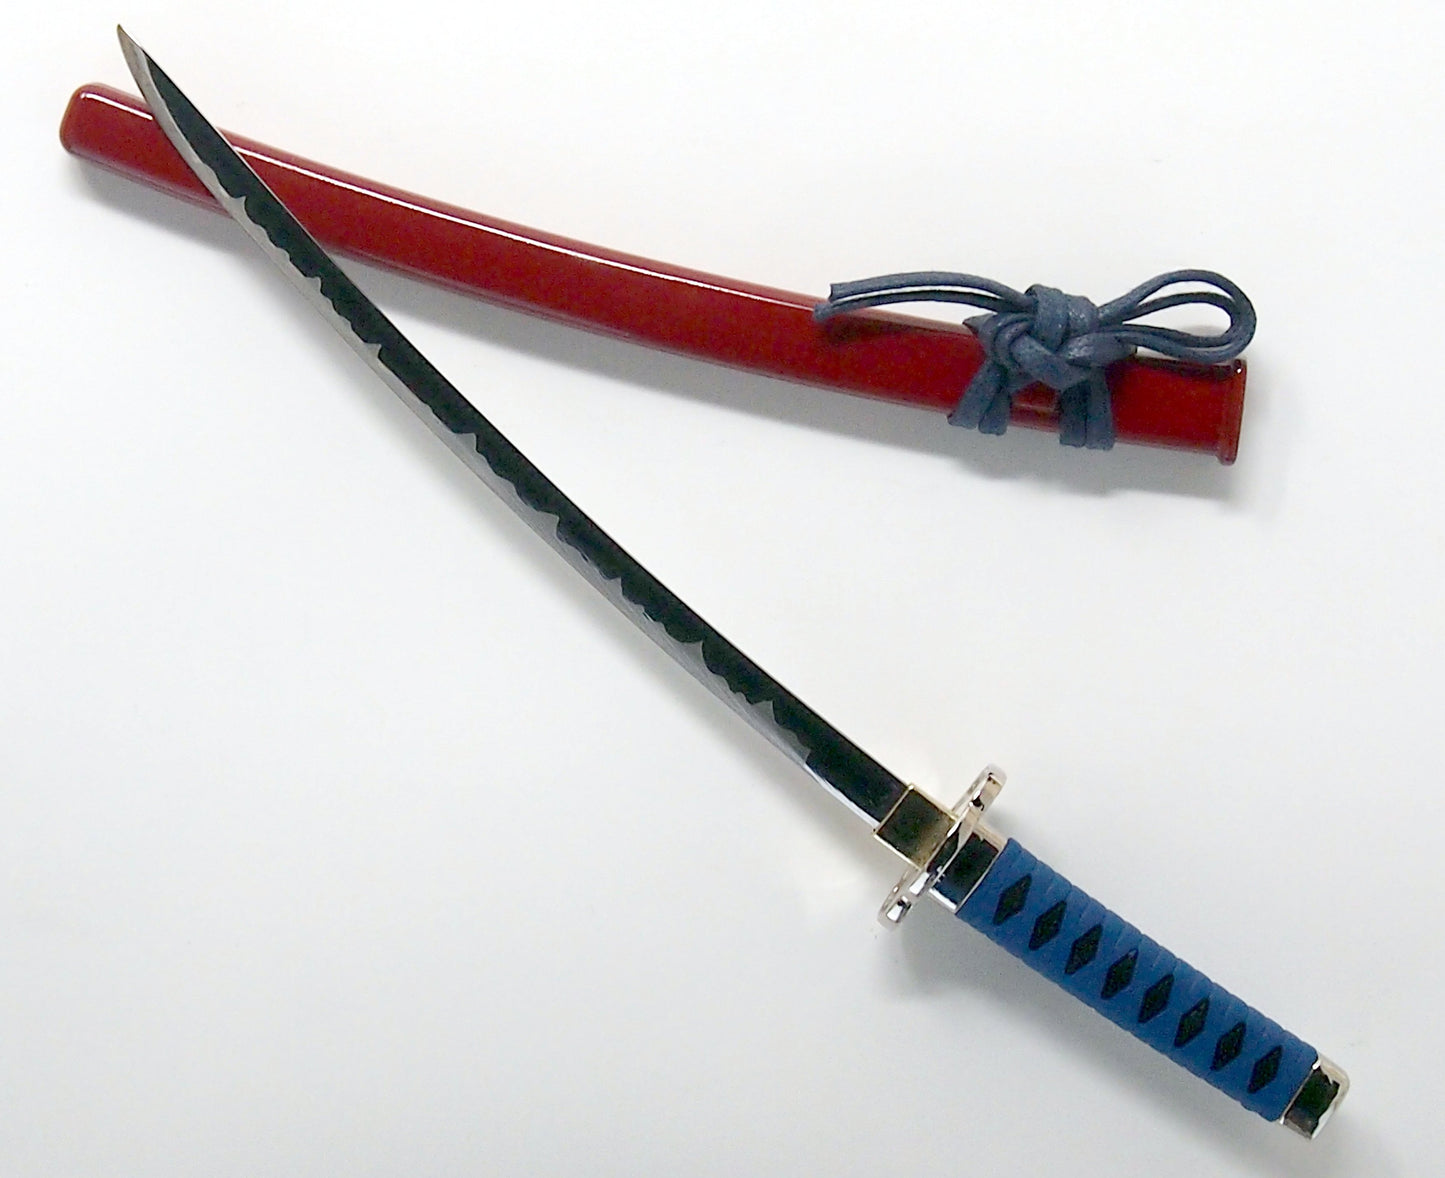 Letter Opener SAMURAI KATANA SWORD Knife Desk Decor item 8 inch Length Safe Edge Maeda Keiji Model Black Grip MT-32K - JAPANESE GIFTS 